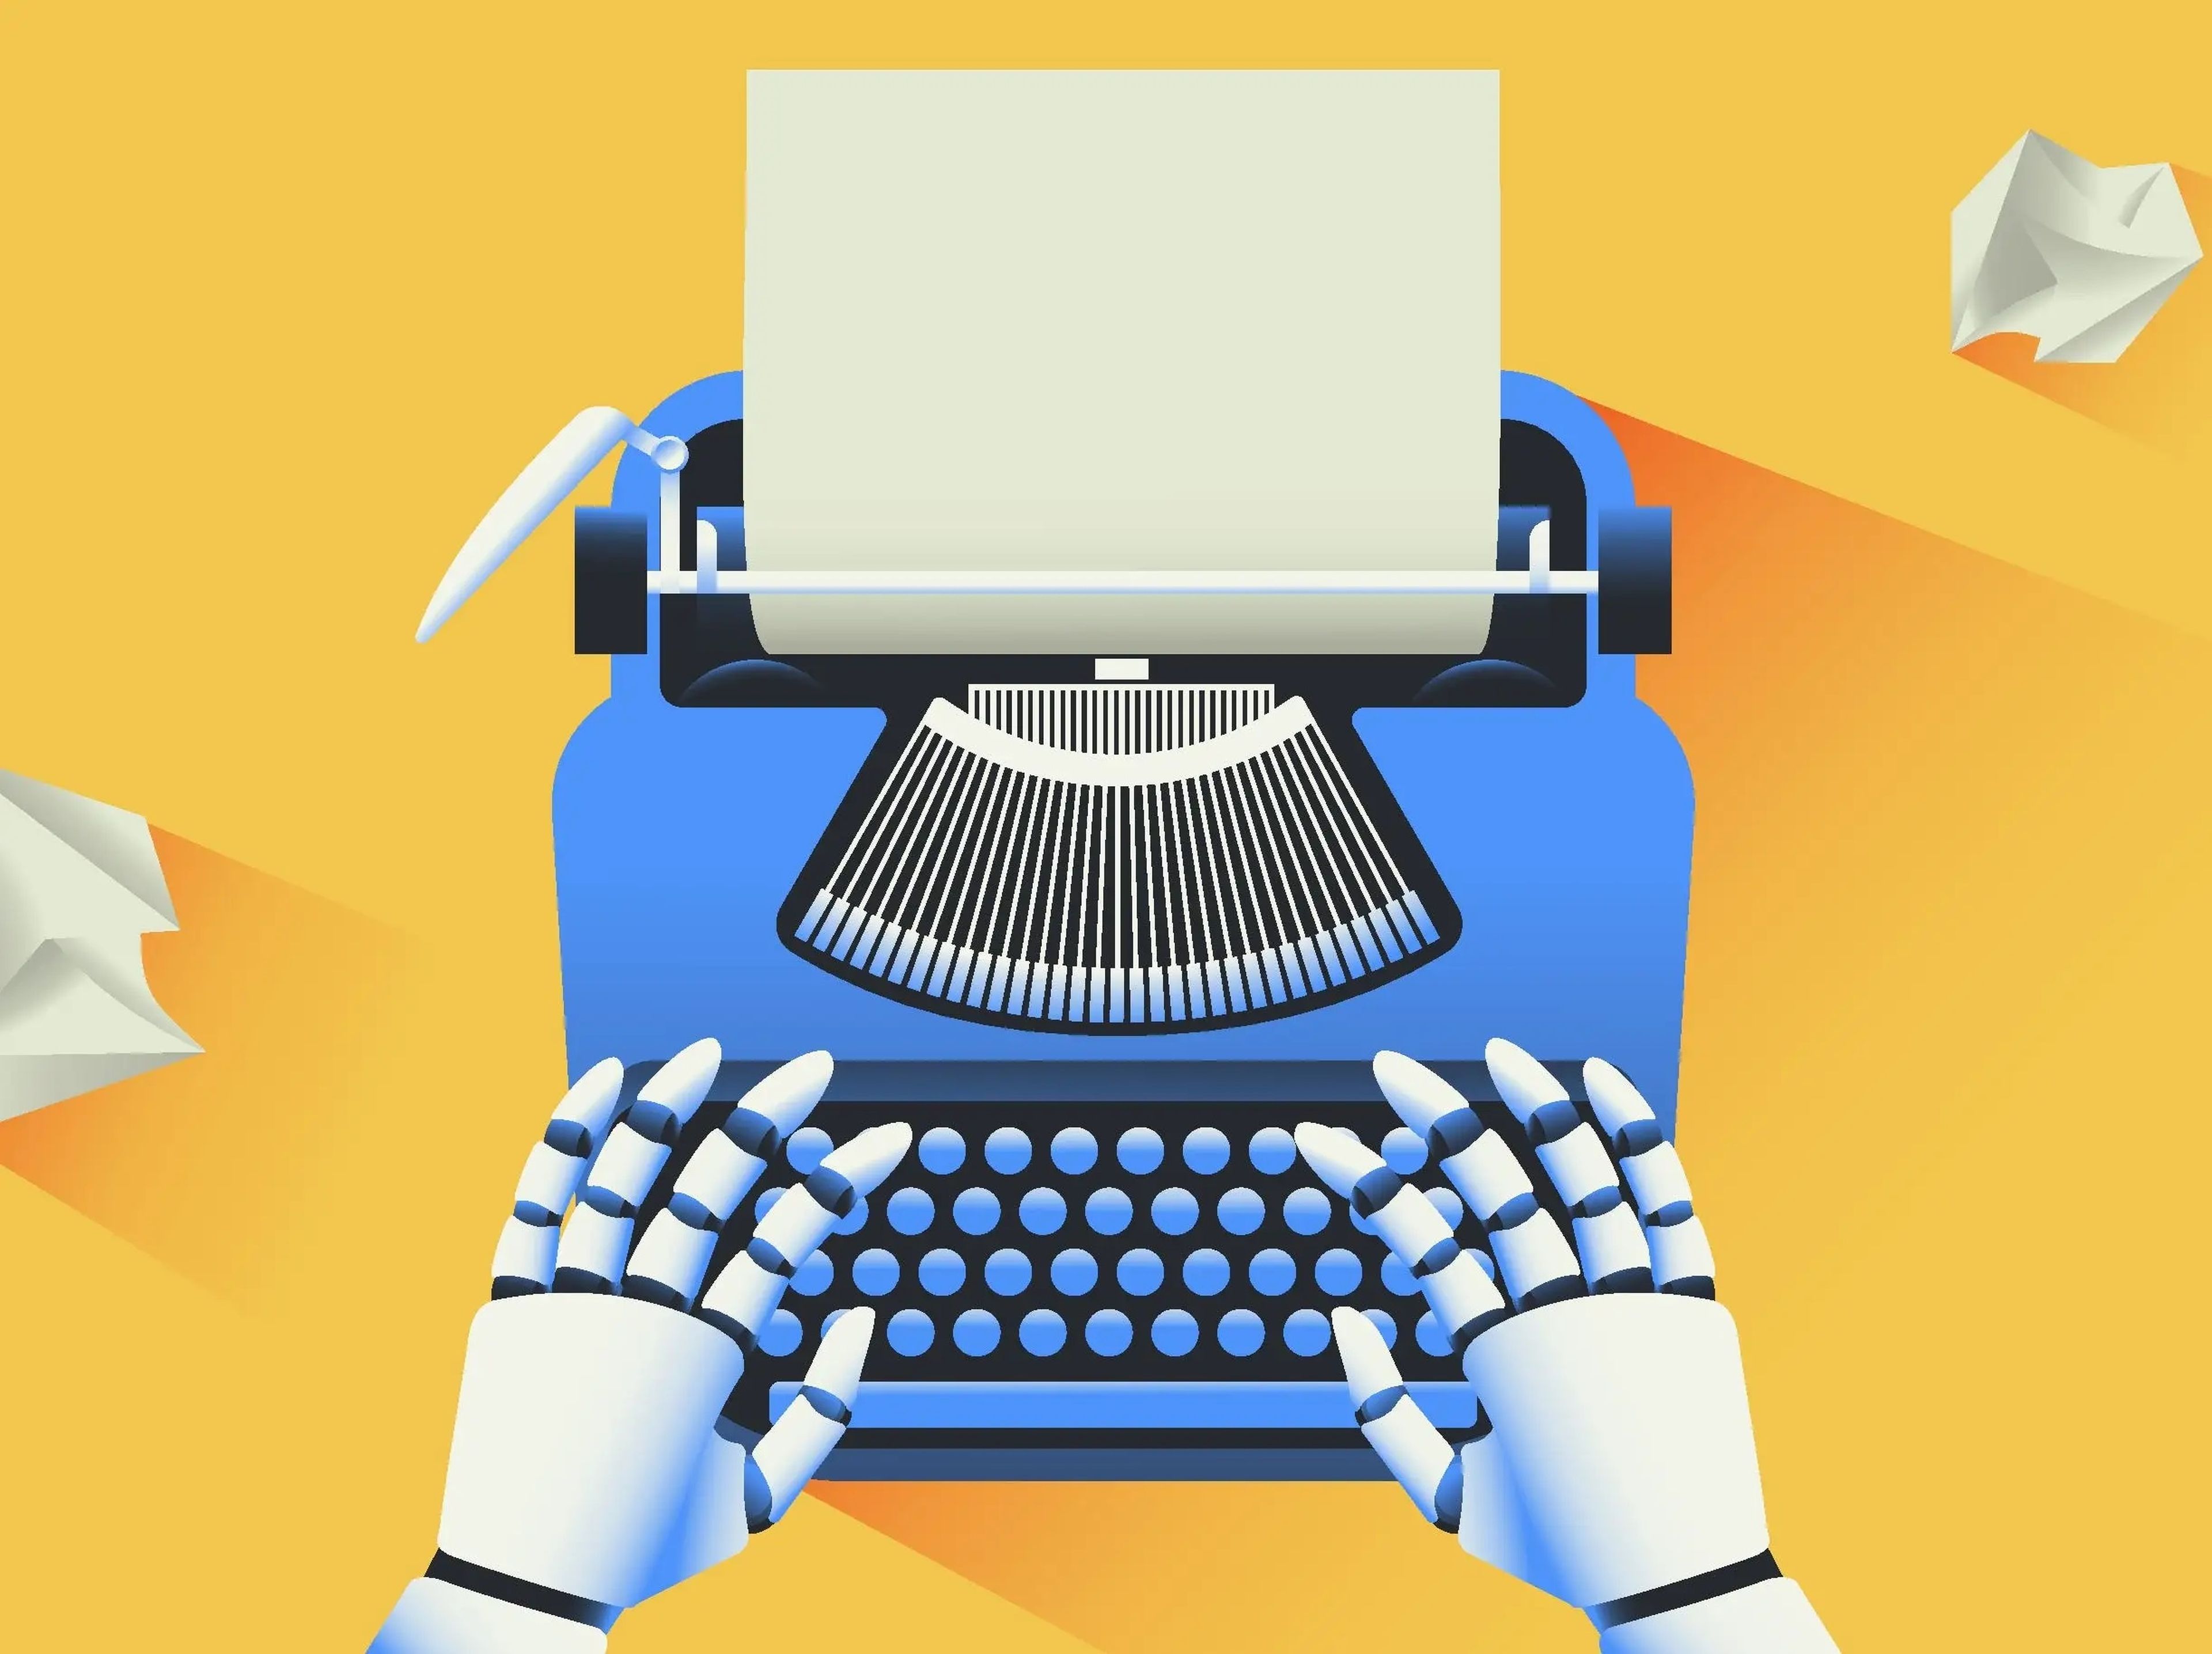 Un robot o una inteligencia artificial con una máquina de escribir.